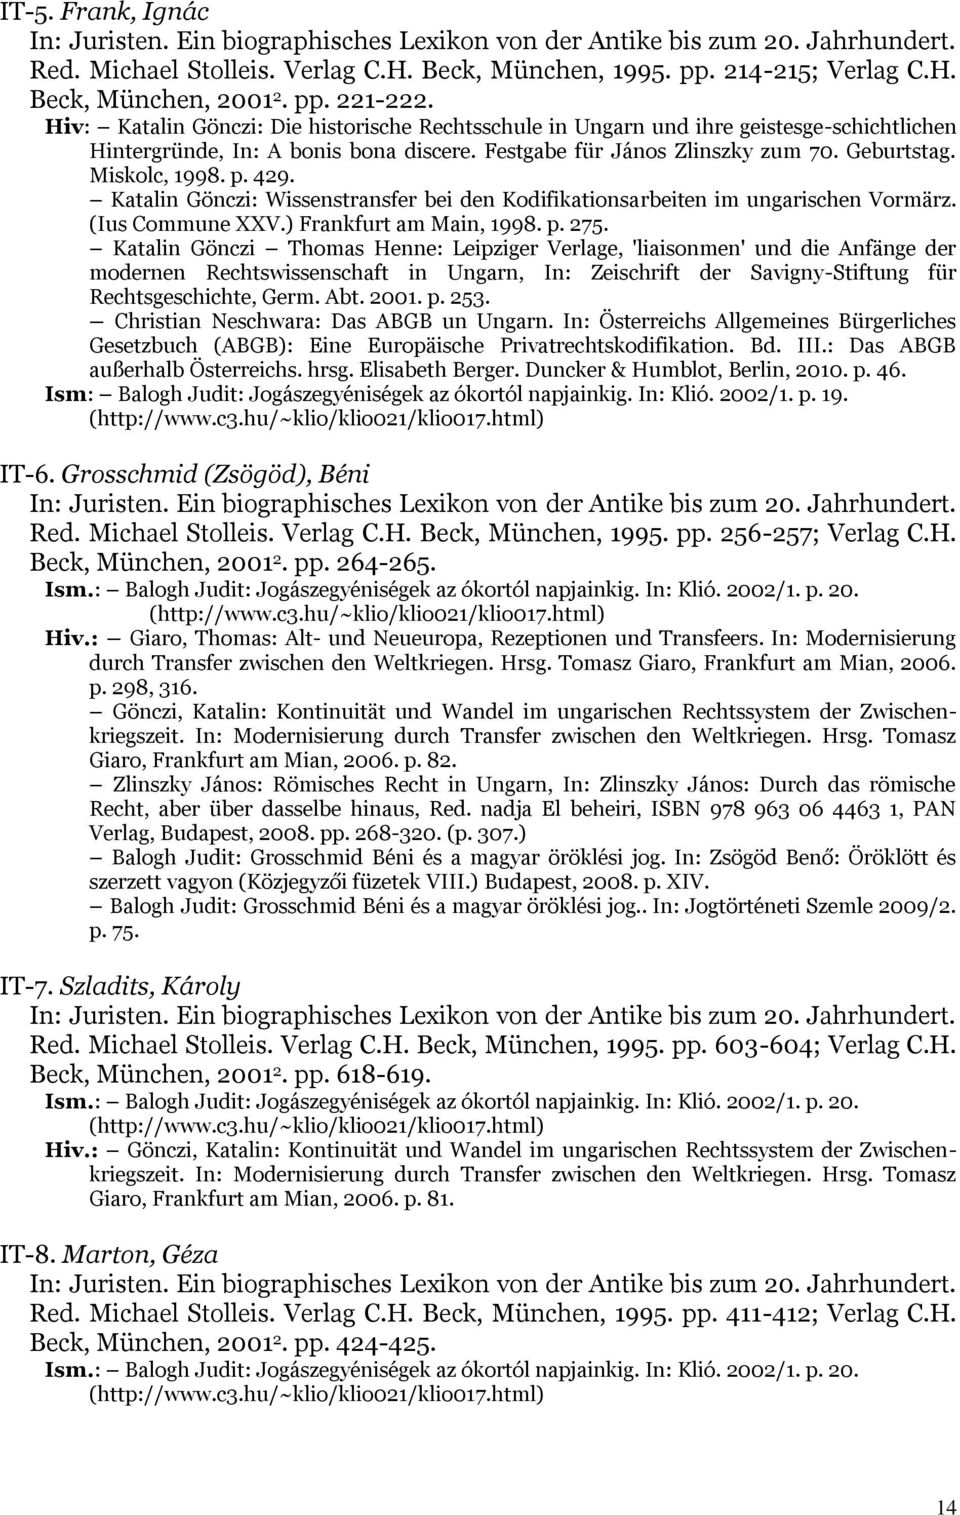 Miskolc, 1998. p. 429. Katalin Gönczi: Wissenstransfer bei den Kodifikationsarbeiten im ungarischen Vormärz. (Ius Commune XXV.) Frankfurt am Main, 1998. p. 275.